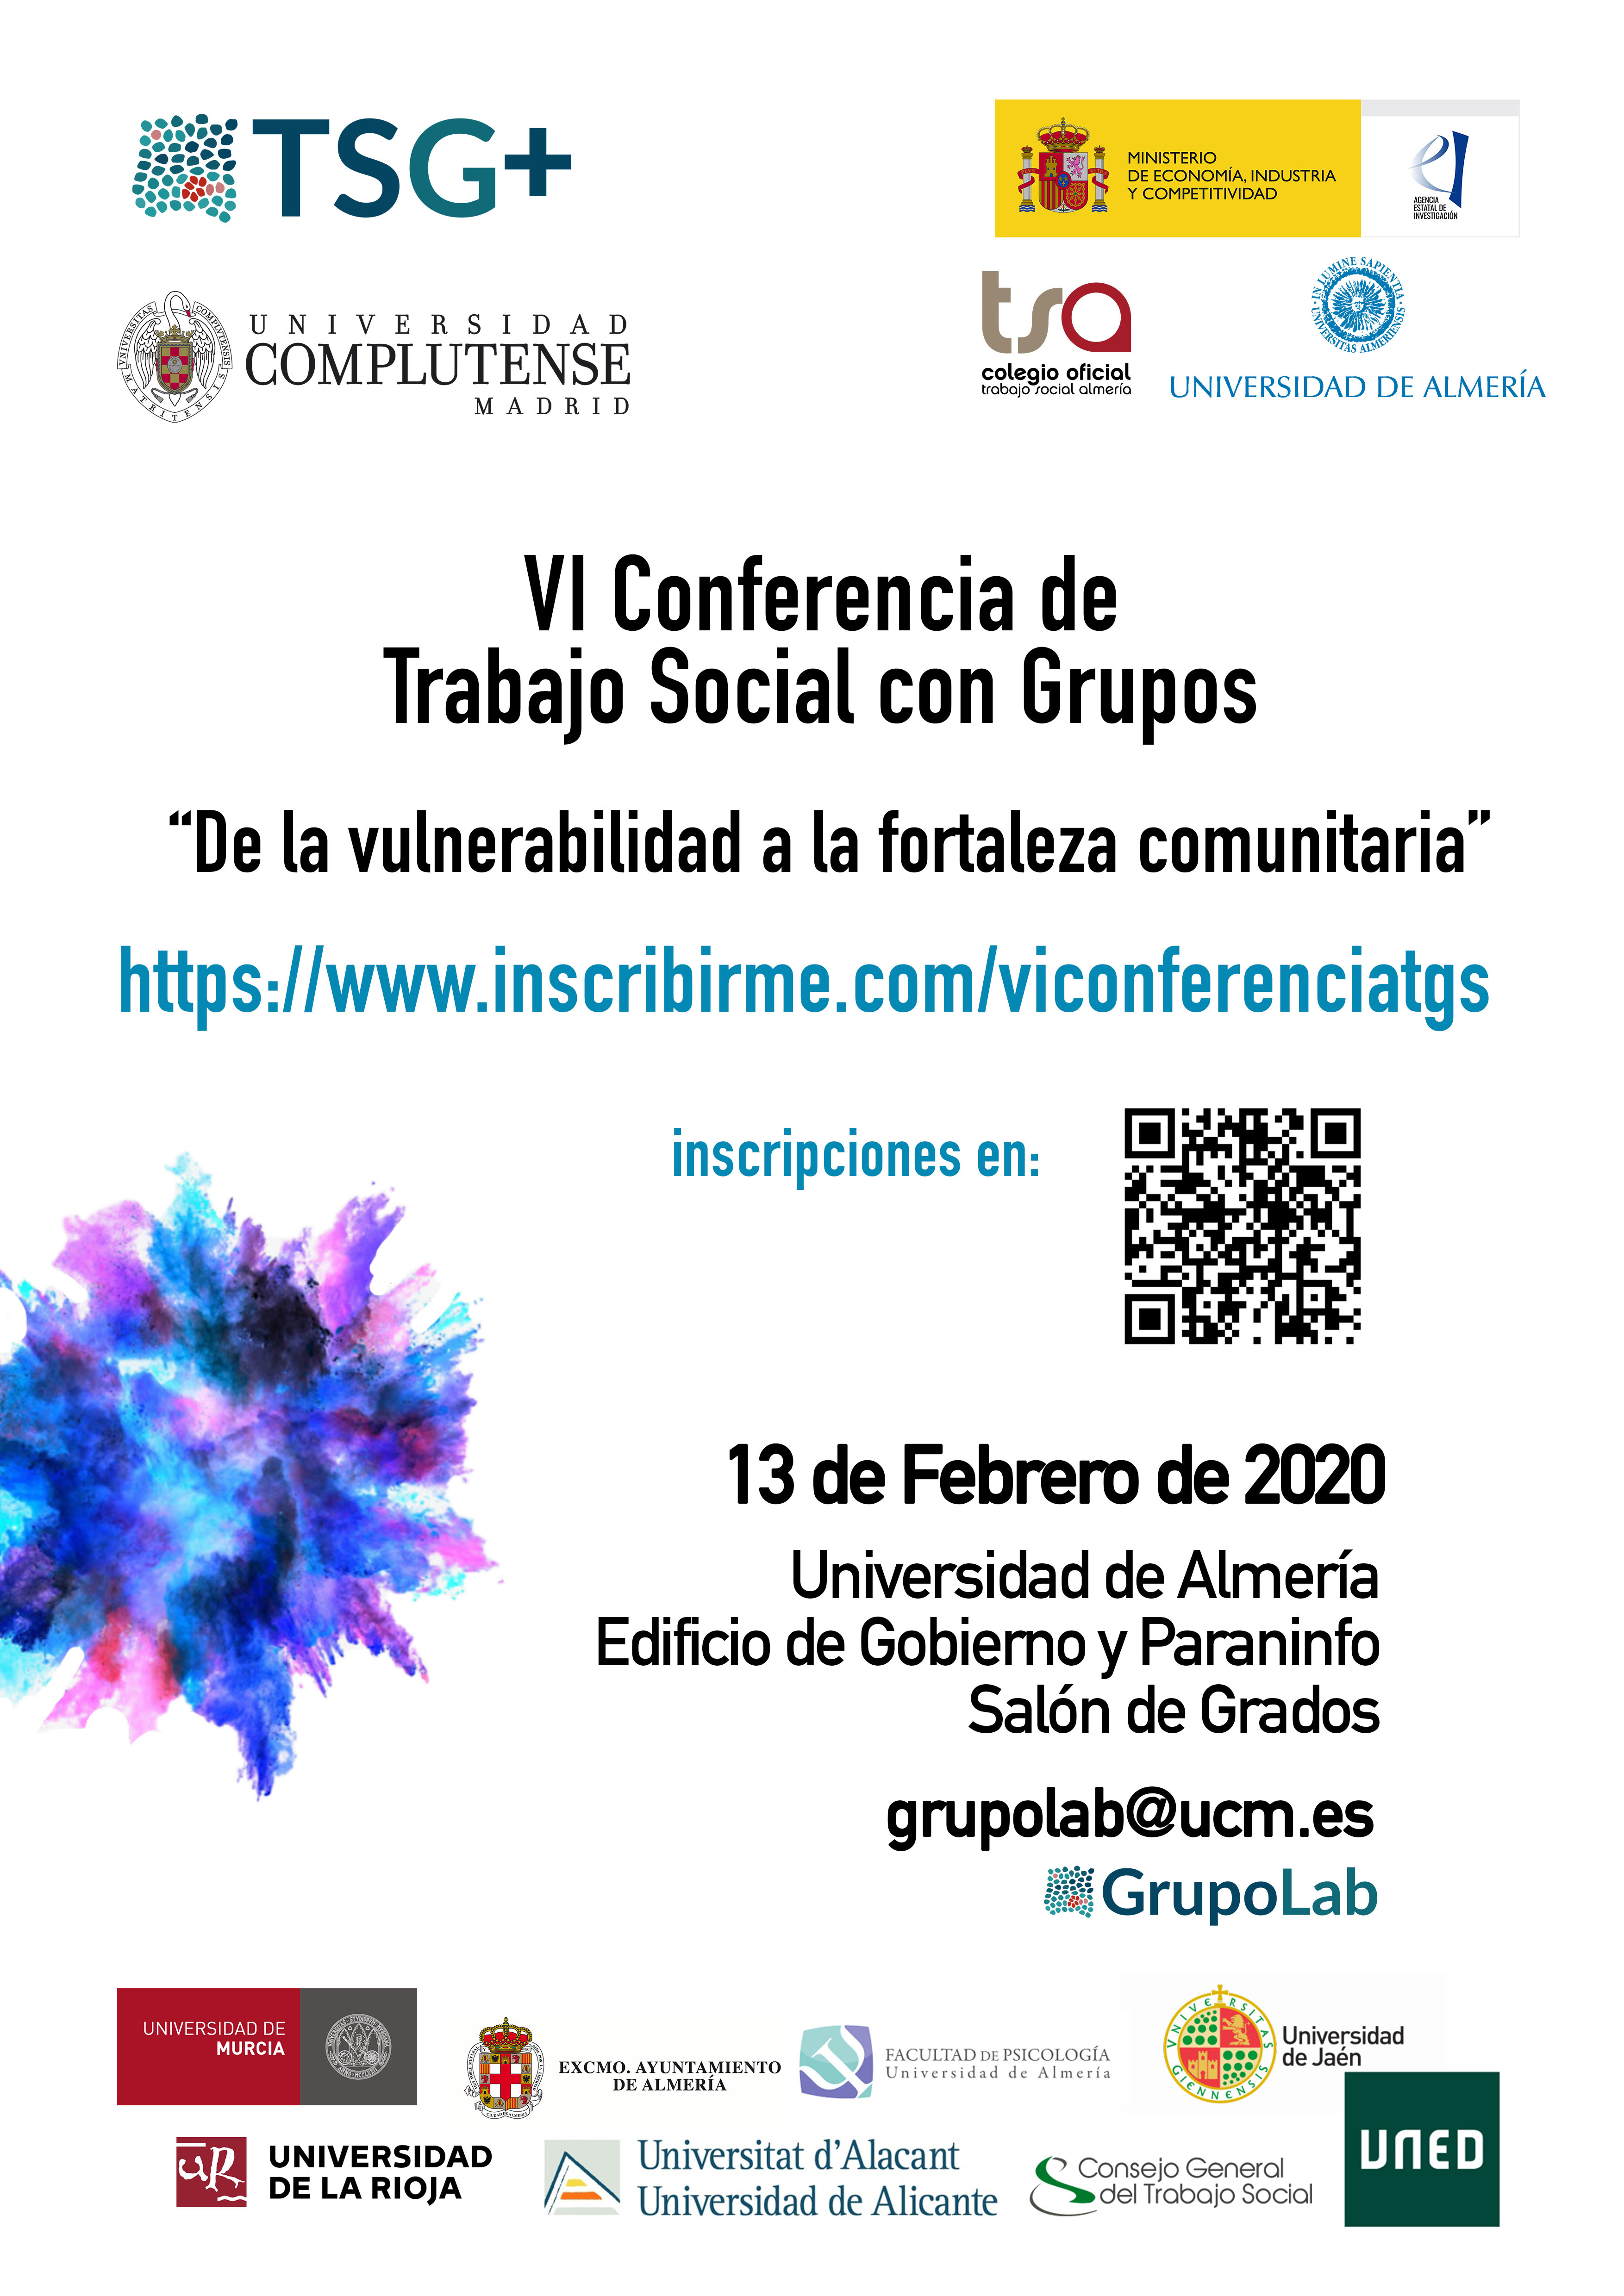 VI Conferencia de Trabajo Social con Grupos en Almería